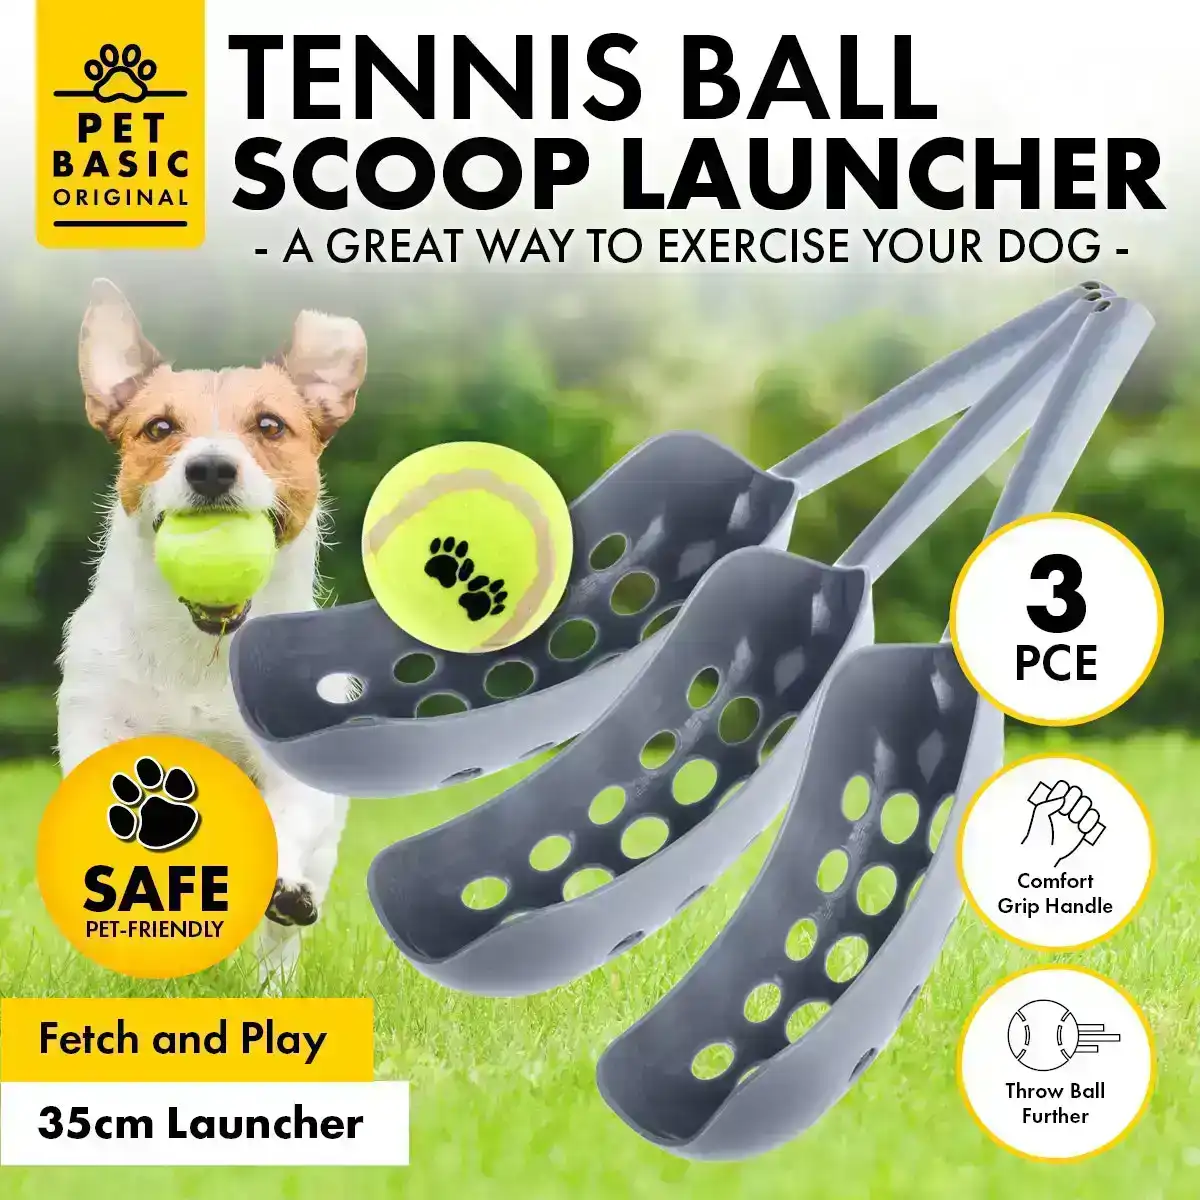 Pet Basic® 3PK Dog Tennis Ball Scoop Launcher Fun Play Fetch Lightweight 35cm